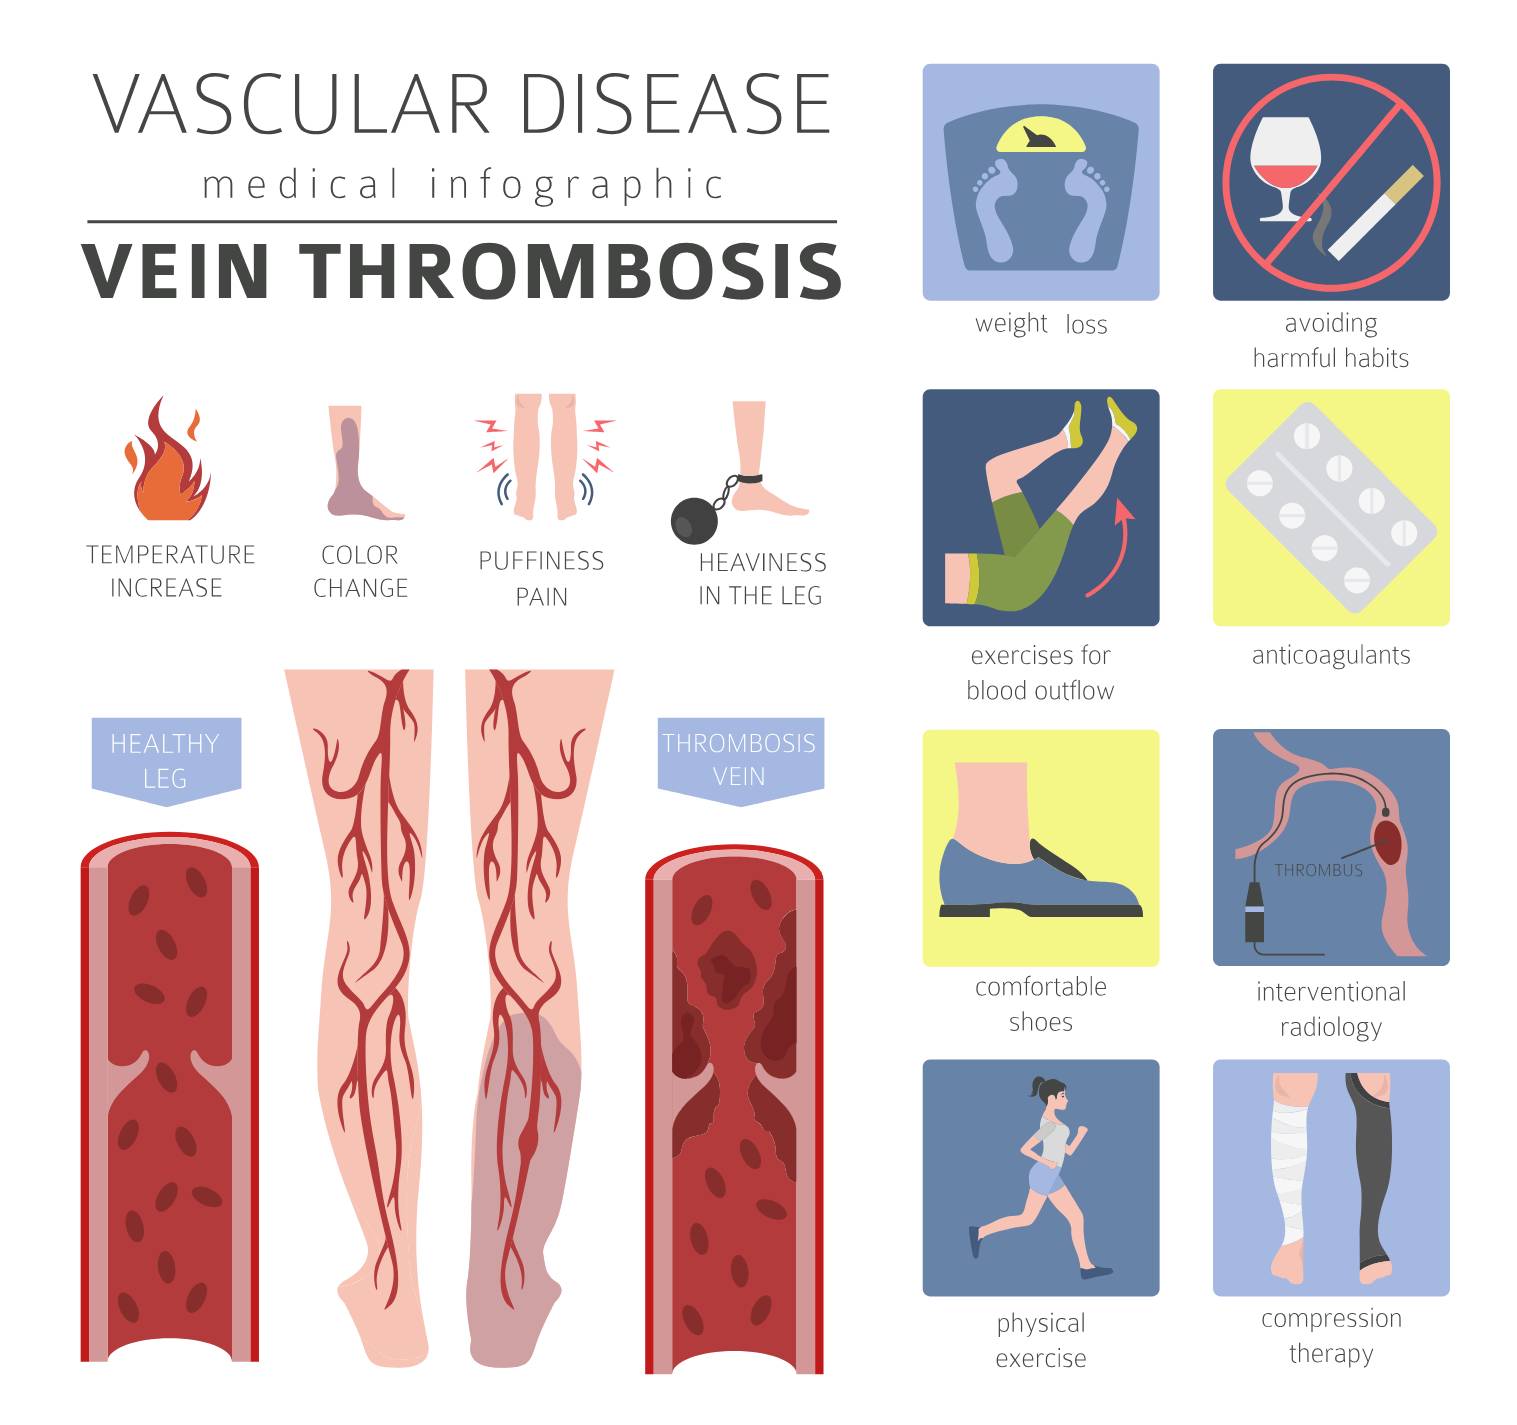 Dvt Vs Arterial Thrombosis